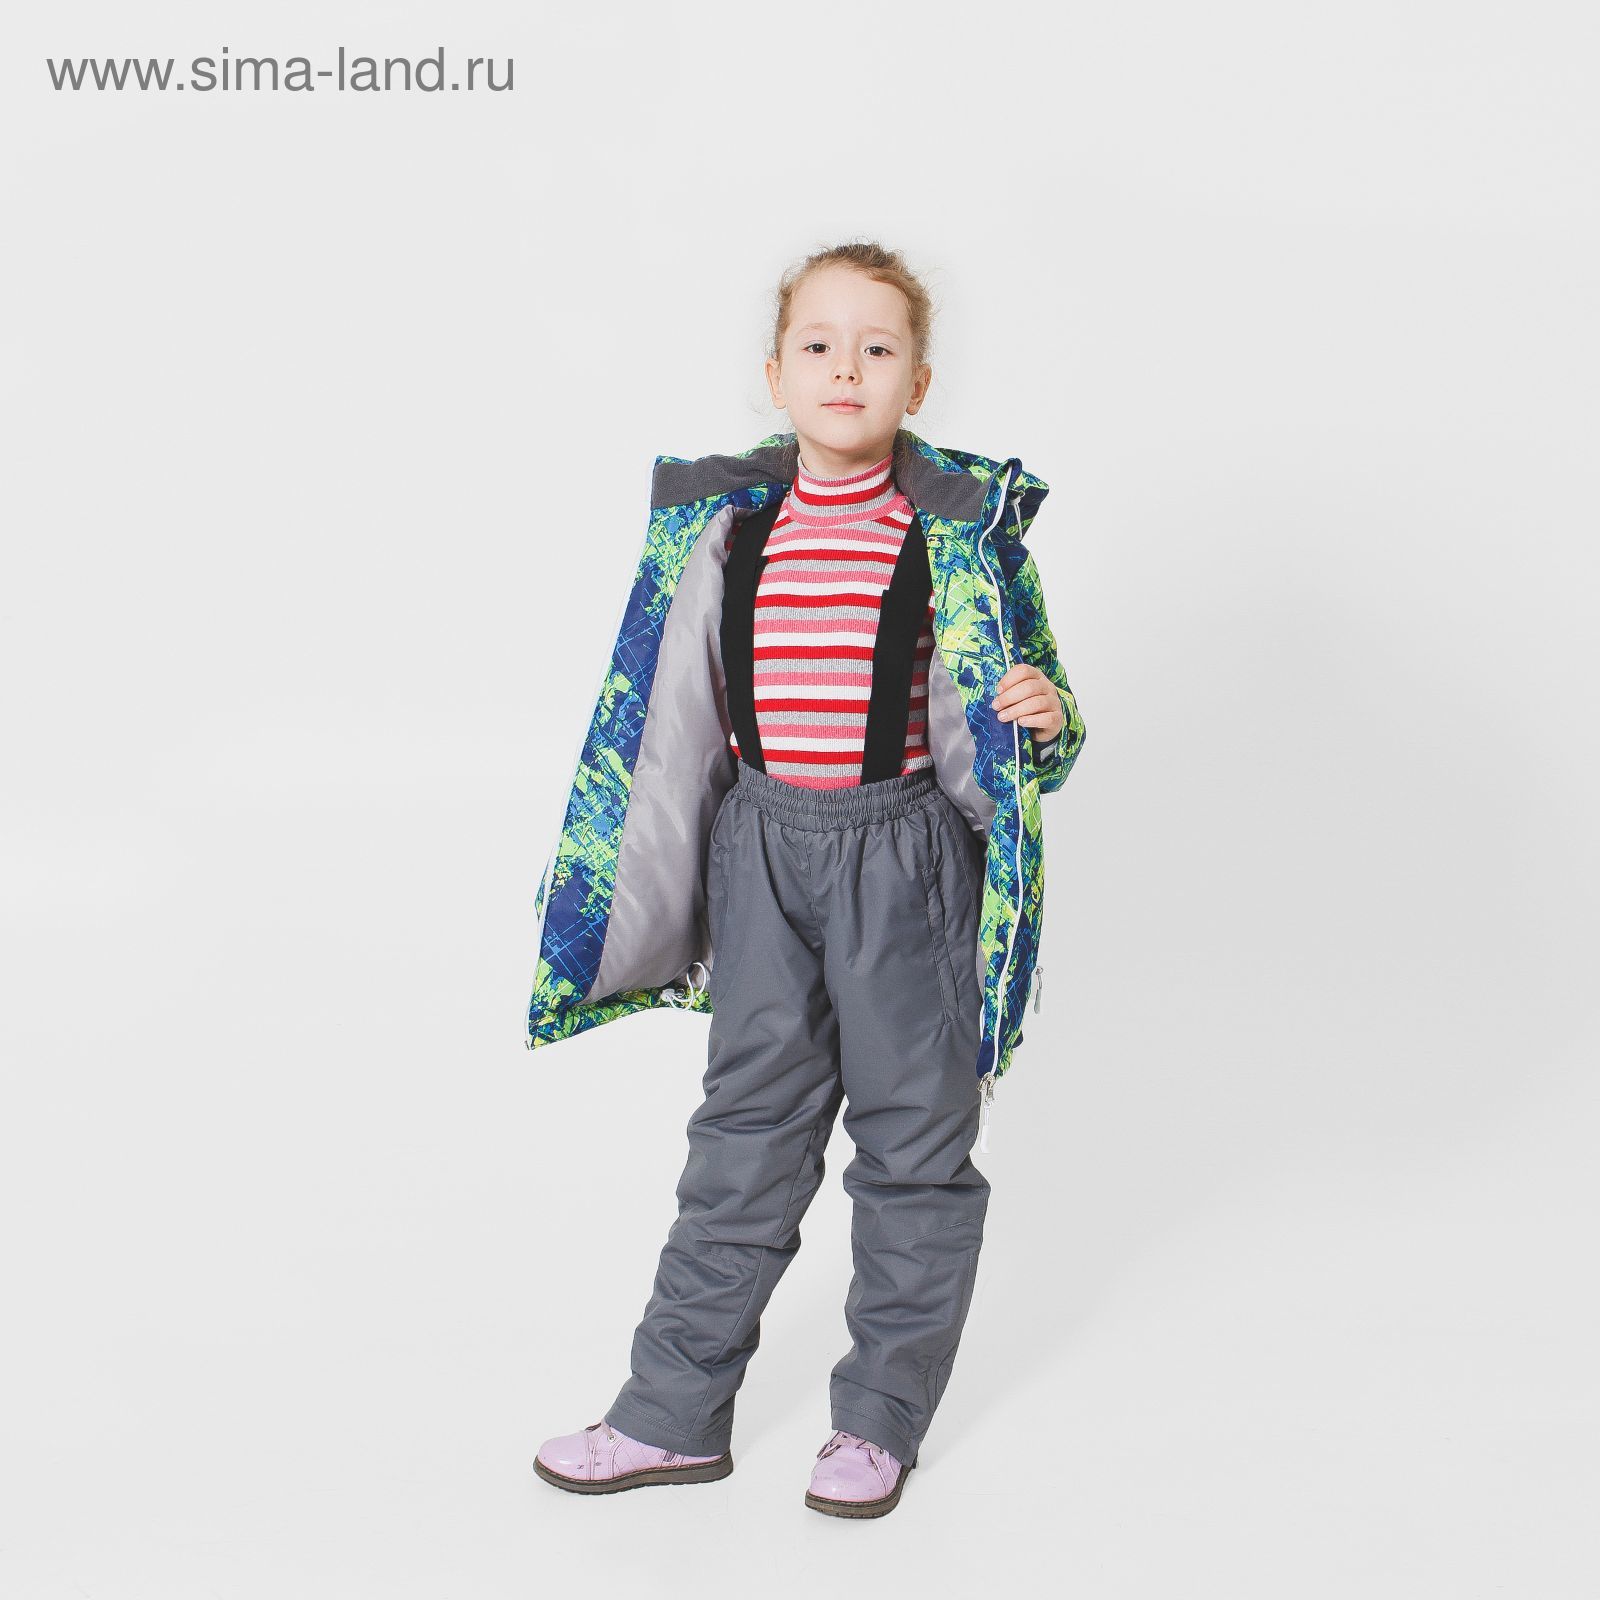 Костюм детский ( куртка+штаны) ONLITOP,куртка-мультицвет; штаны-серые (р. 34)